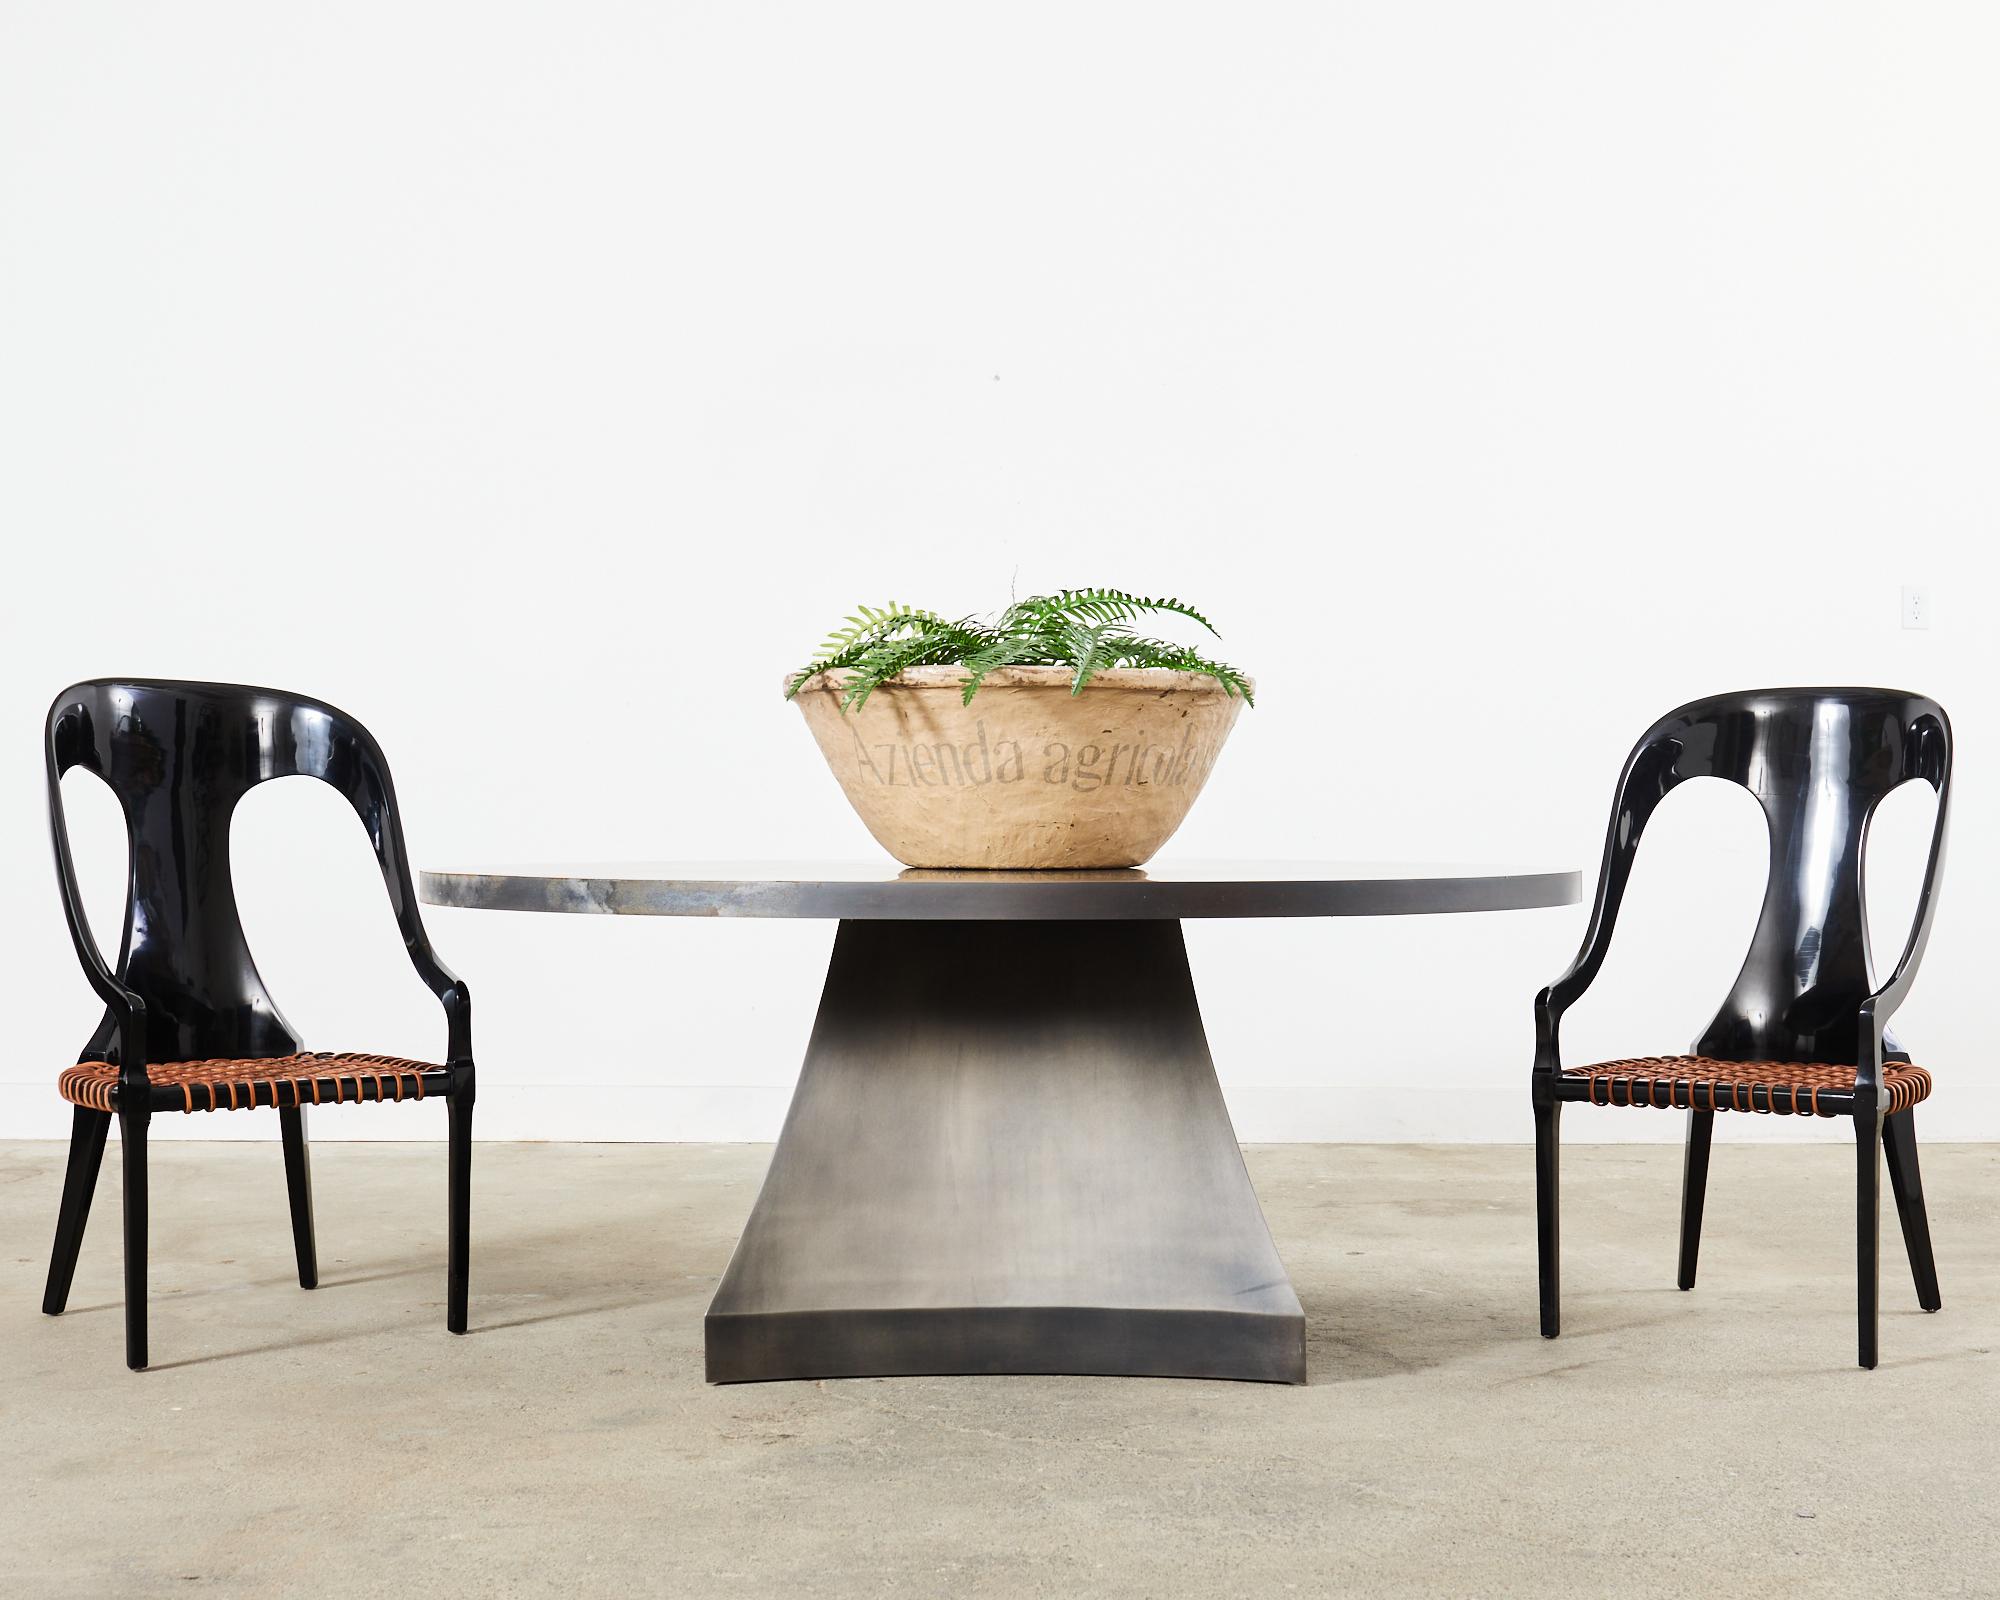 Imposanter minimalistischer runder Esstisch aus Eisen oder großer Mitteltisch, entworfen von Sally Sirkin Lewis für J. Robert Scott. Der moderne, maßgeschneiderte Tisch misst 75 Zoll im Durchmesser und wird von einem skulpturalen, vierseitigen